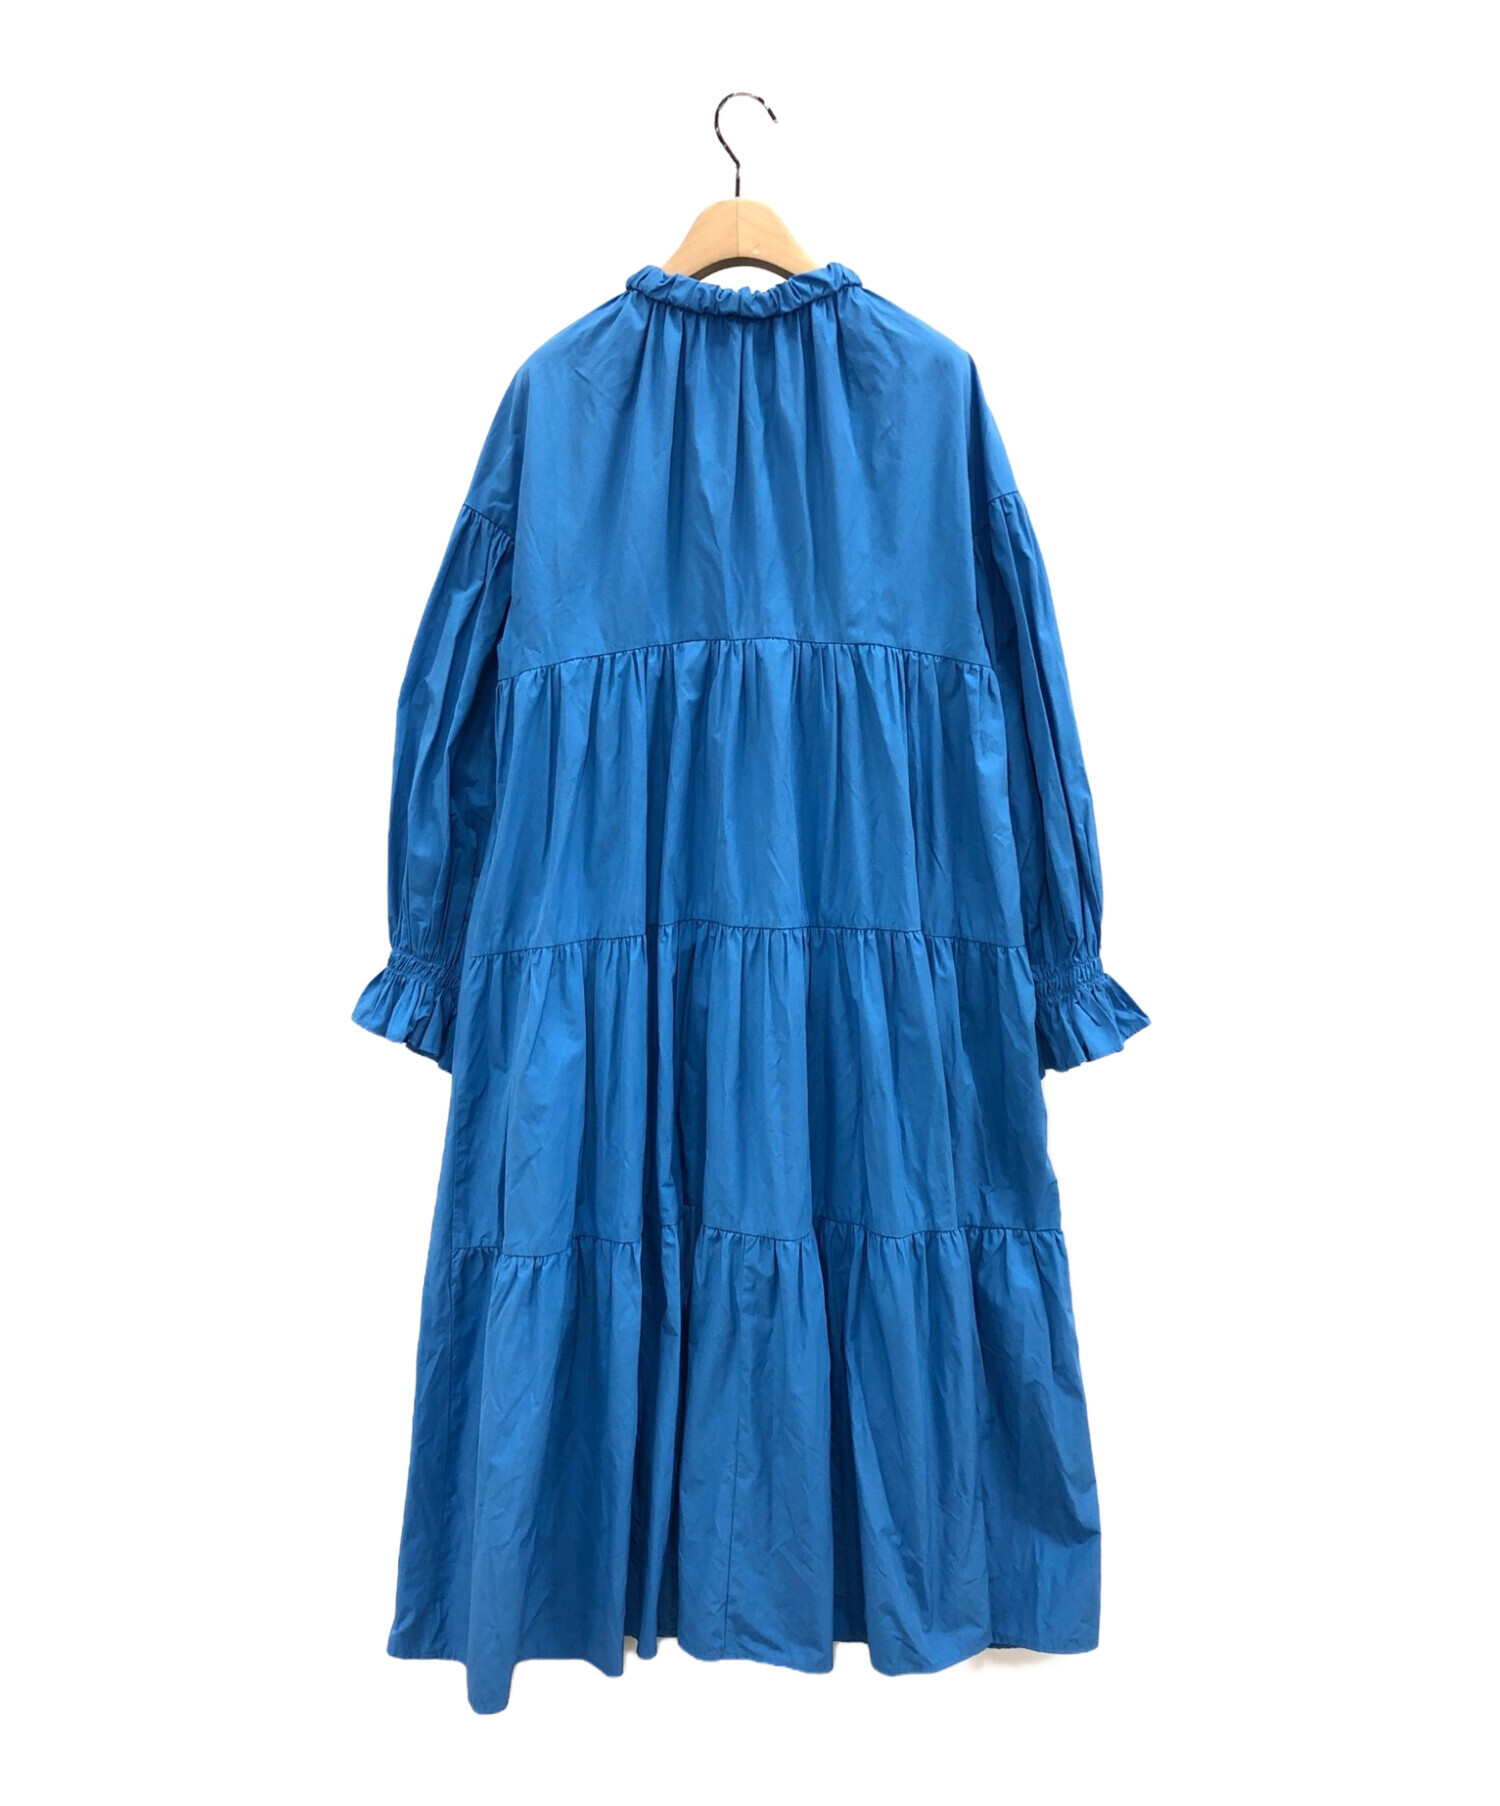 machatt (マチャット) リボンバックティアードドレス ブルー サイズ:F